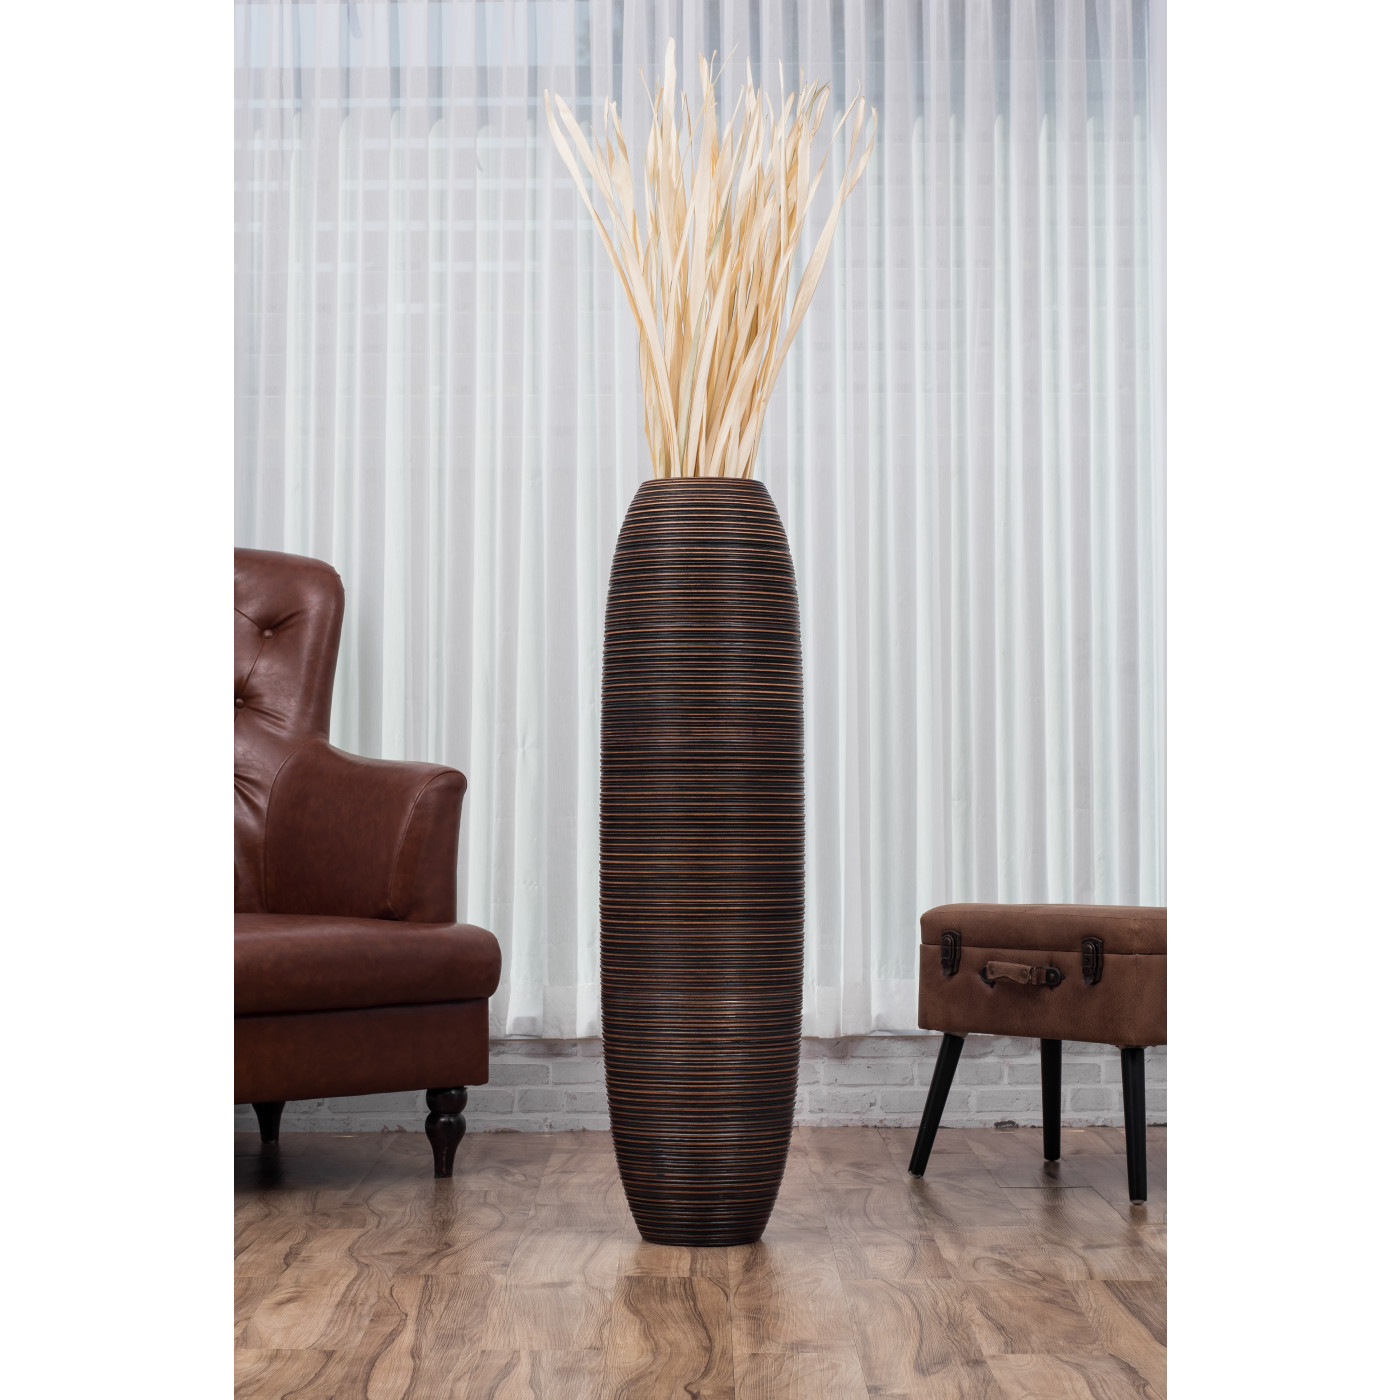 Leewadee grande vaso da terra: vaso alto, elemento decorativo fatto a mano  in legno di mango